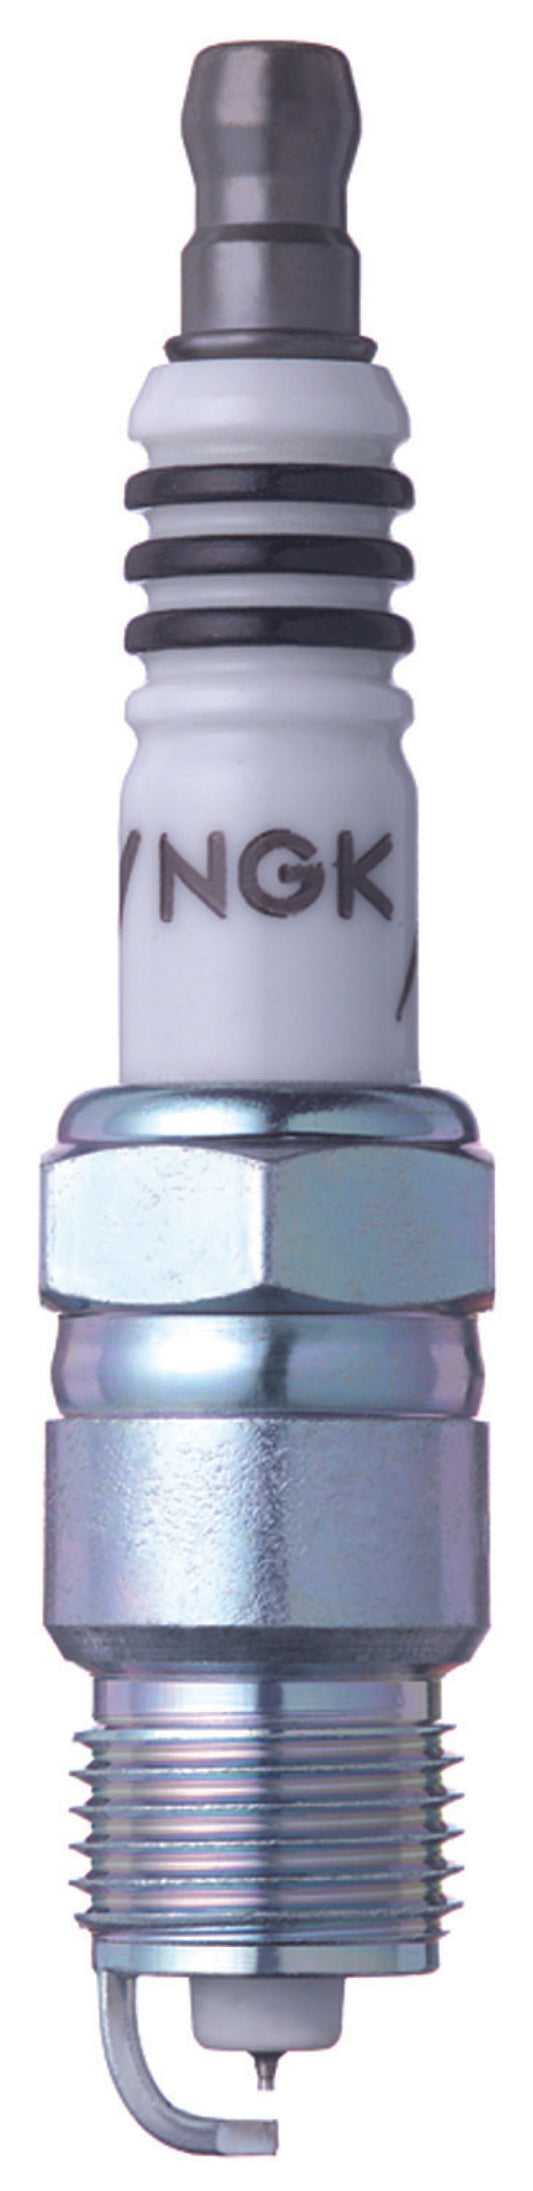 NGK IX Iridium Spark Plug Box of 4 (UR5IX)